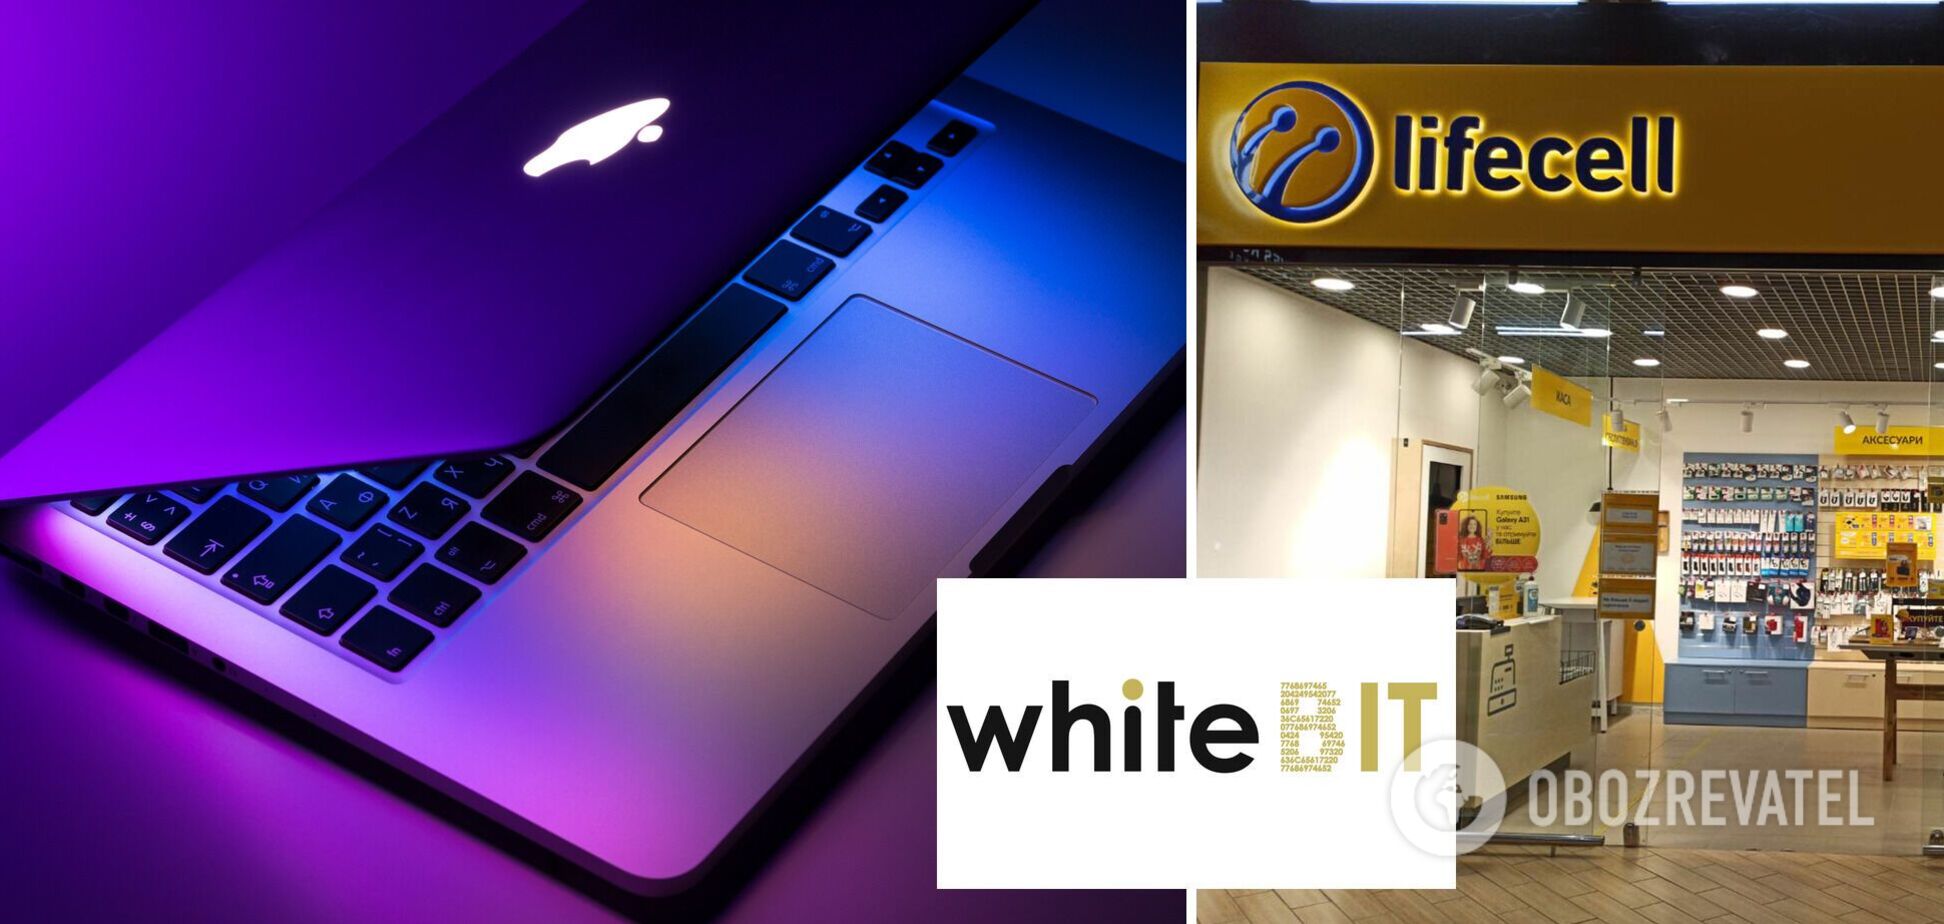 WhiteBIT оголосила акцію для абонентів lifecell